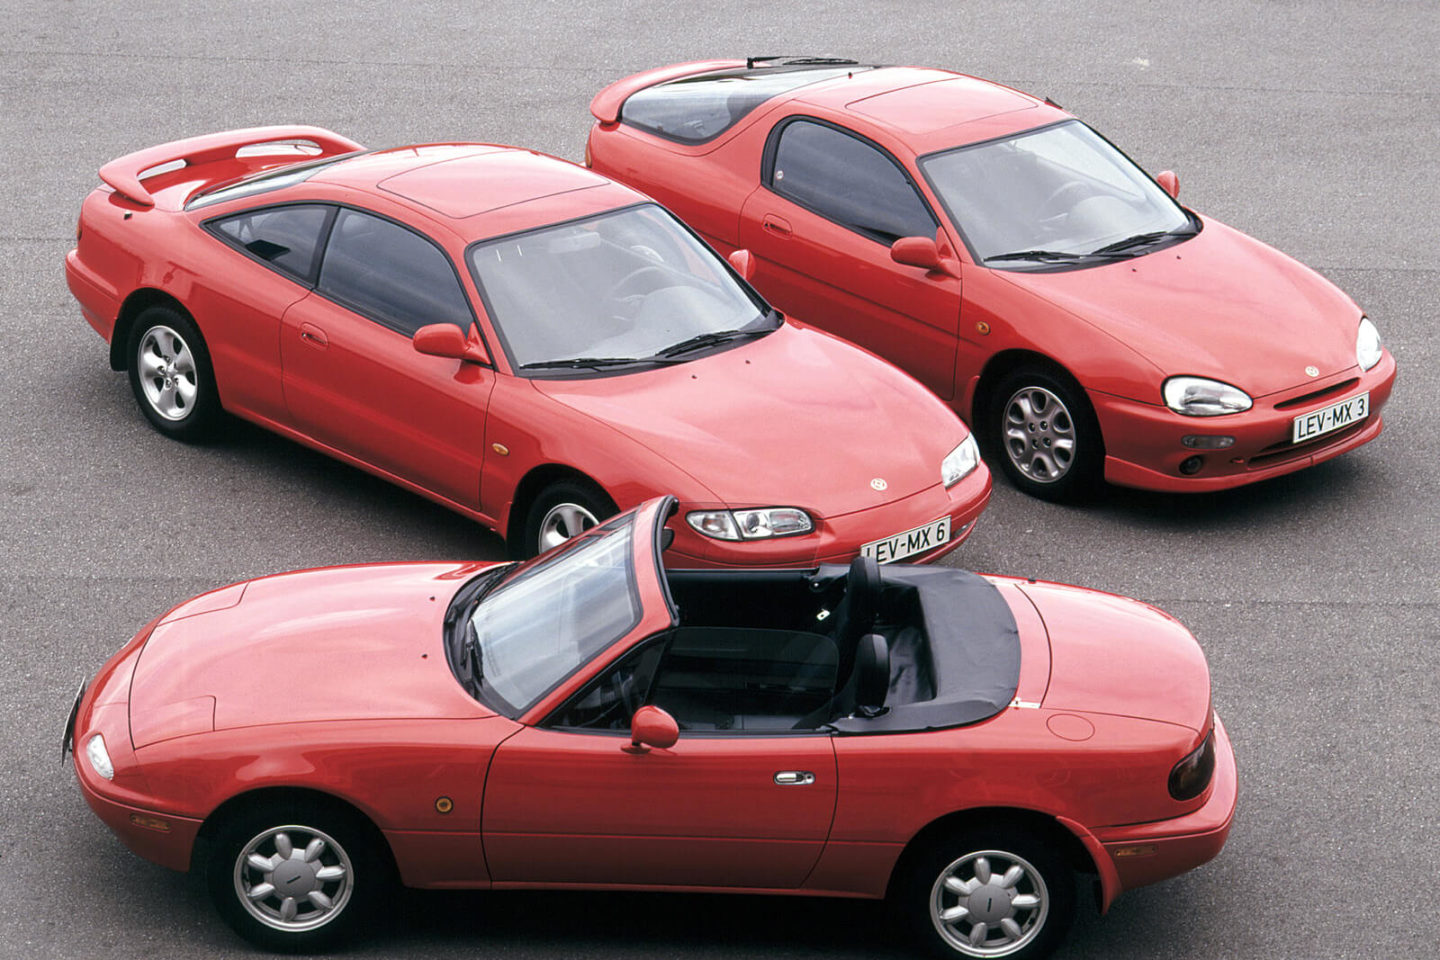 Mazda MX-6, MX-5, MX-3